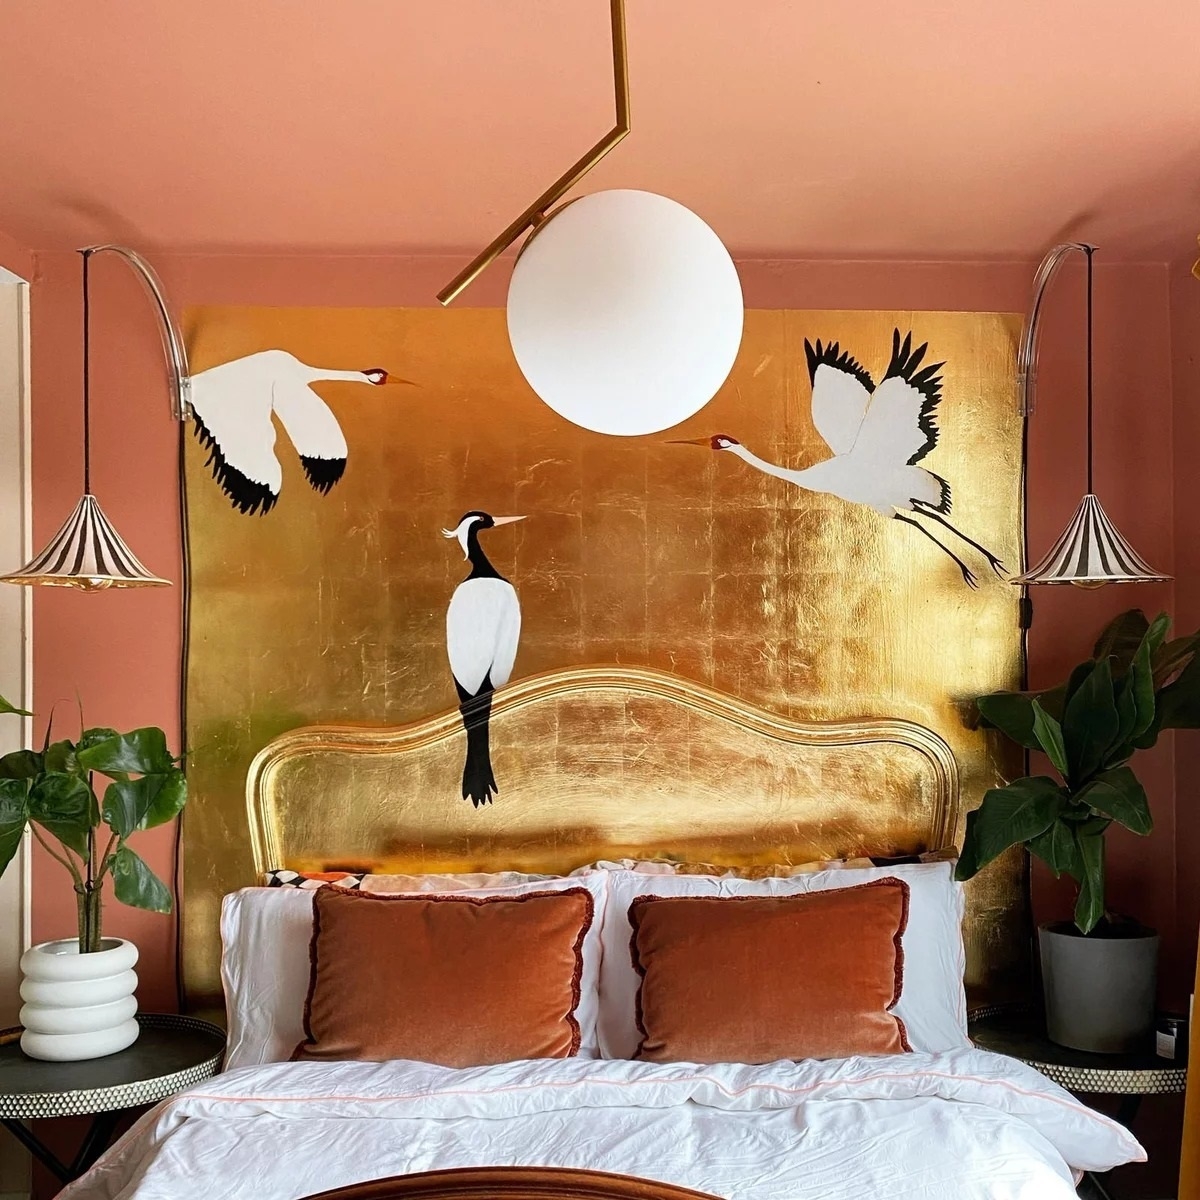 Golden bedroom